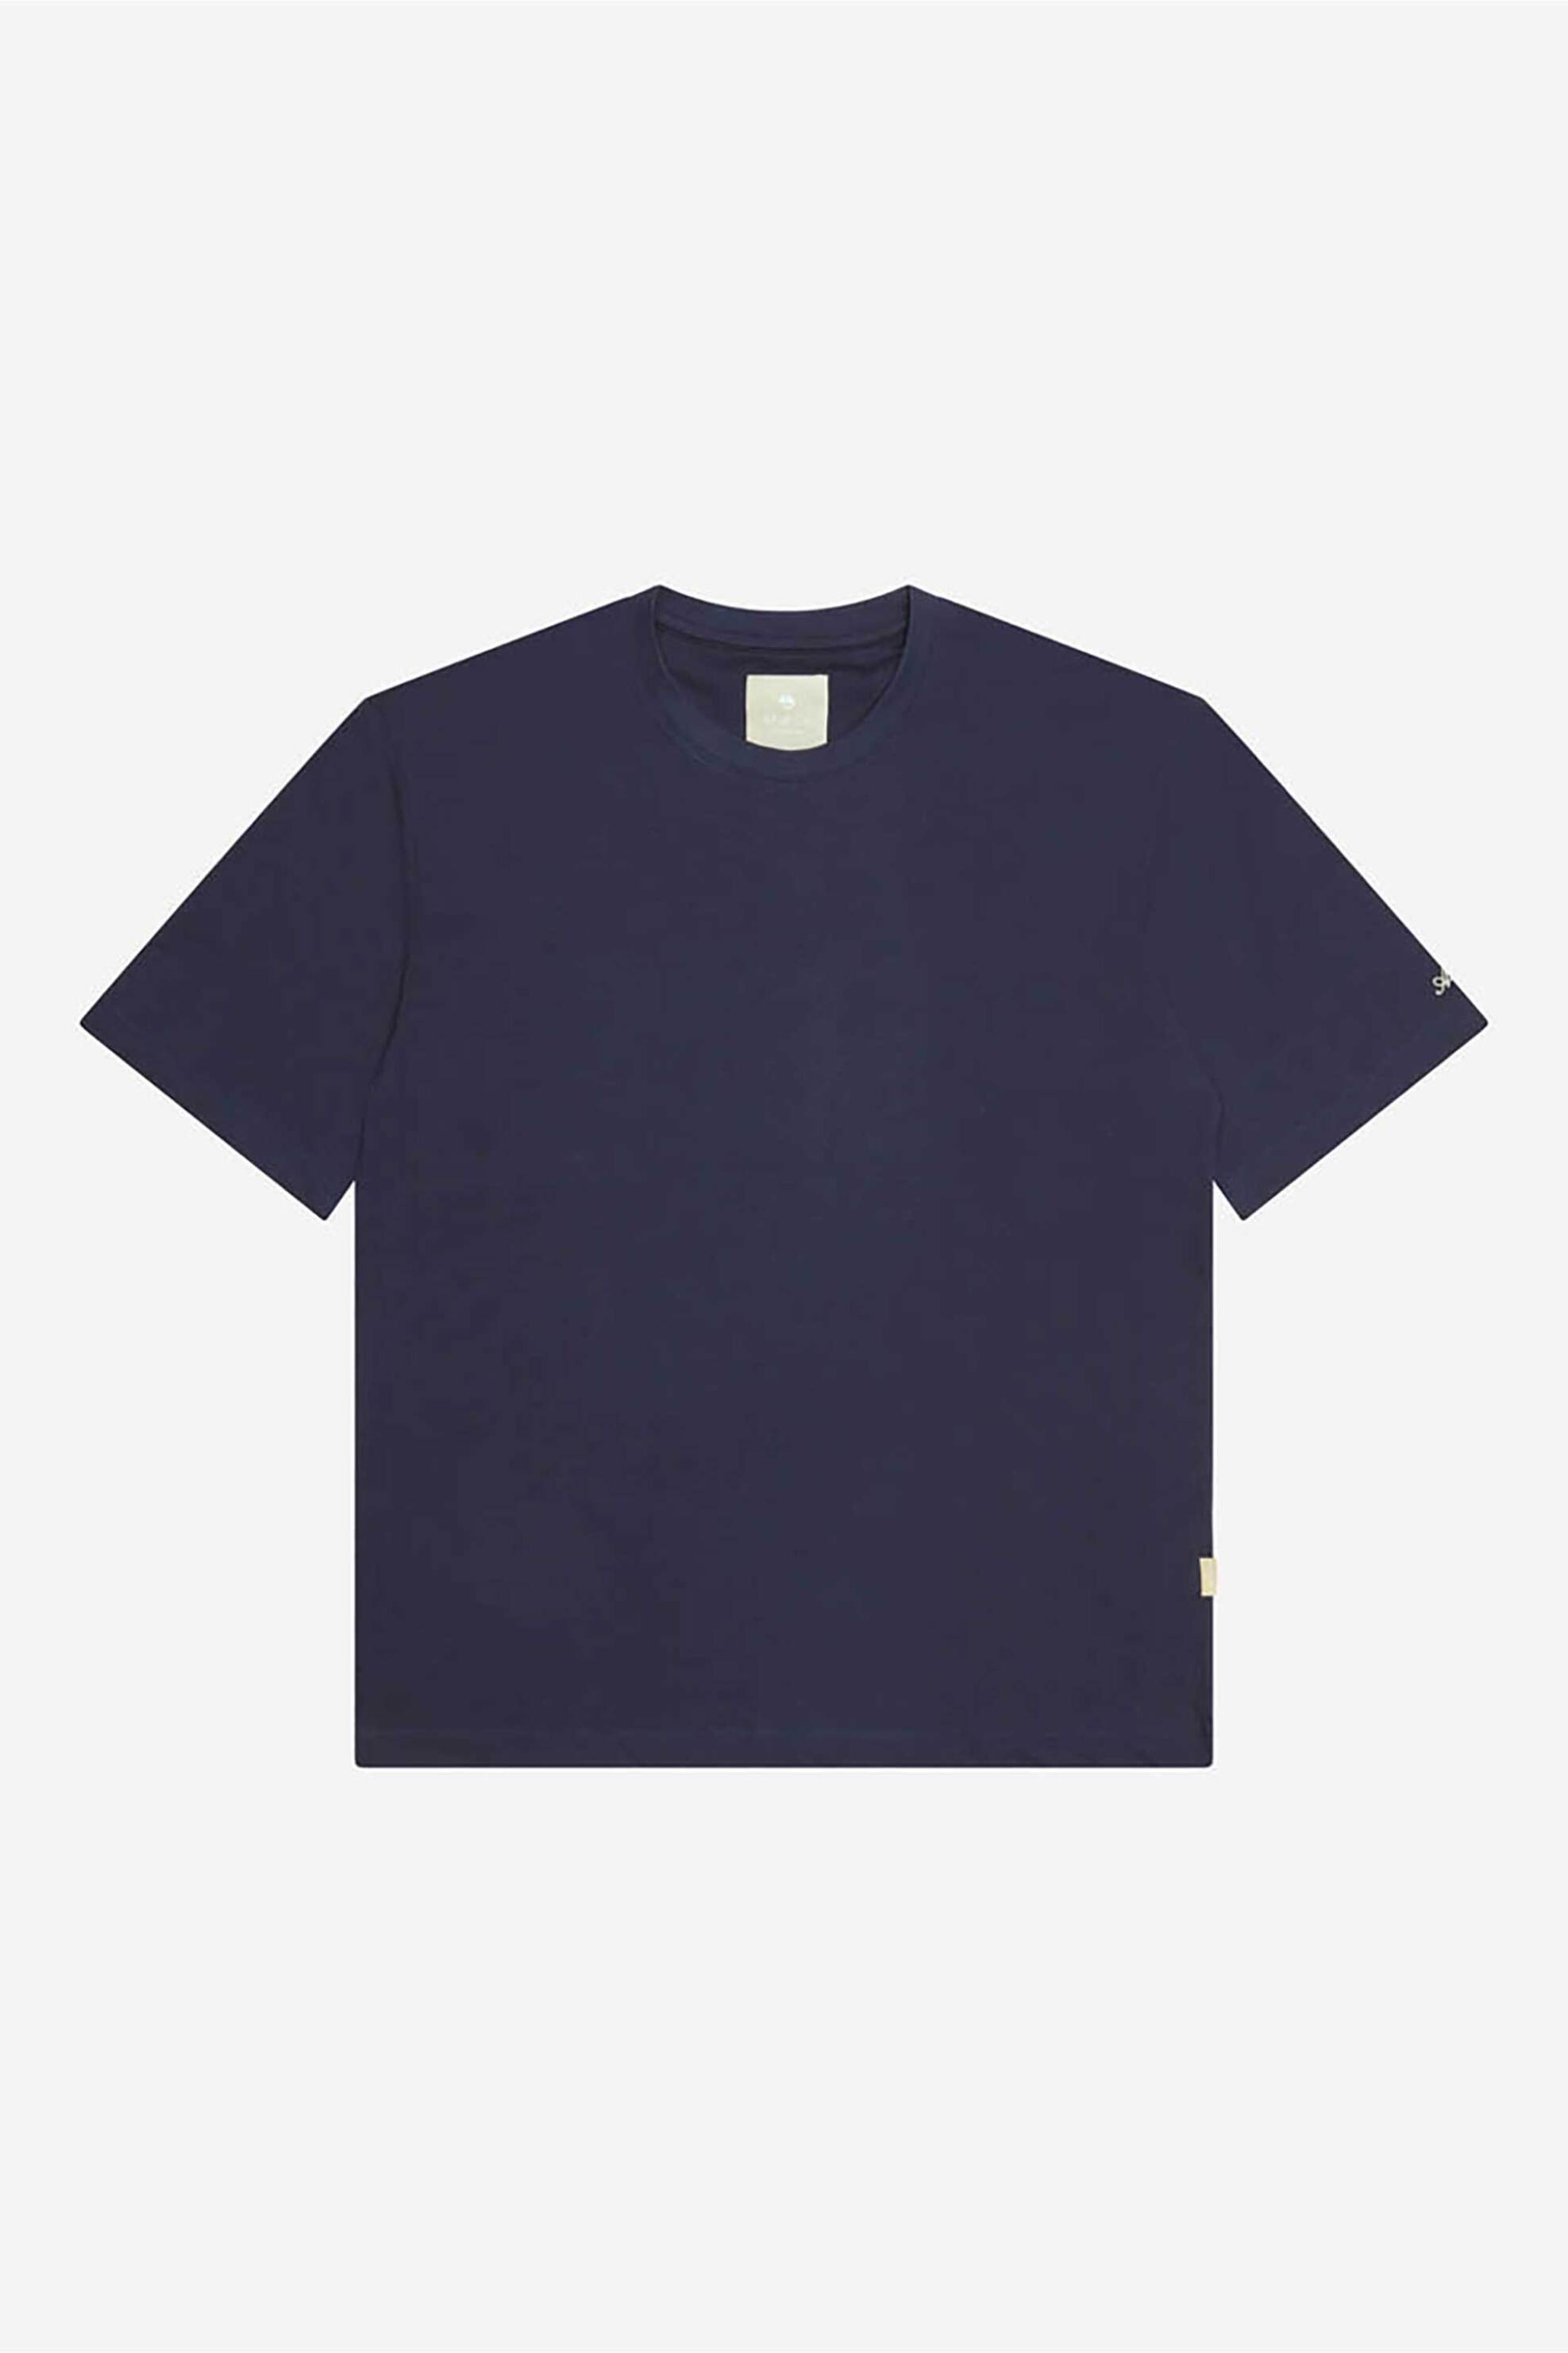 Ανδρική Μόδα > Ανδρικά Ρούχα > Ανδρικές Μπλούζες > Ανδρικά T-Shirts AT.P.CO ανδρικό T-shirt μονόχρωμο βαμβακερό με κεντημένο λογότυπο στο μανίκι - A286T1SG1- Σκούρο Μπλε